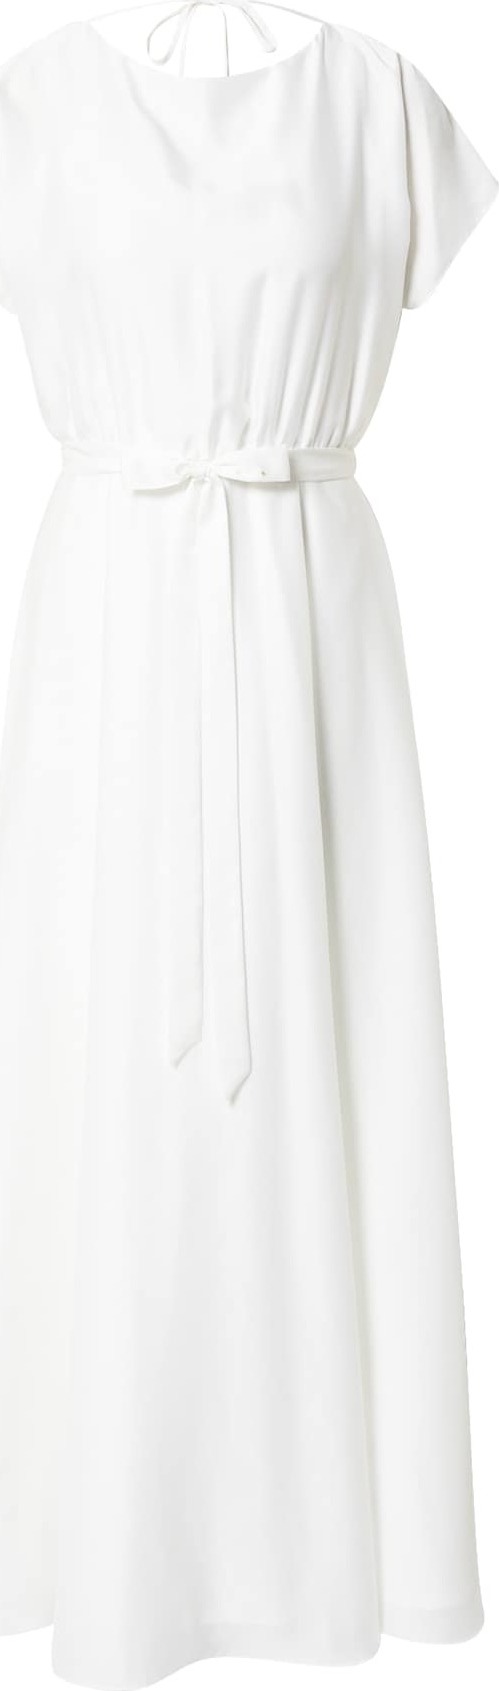 Společenské šaty SWING bílá